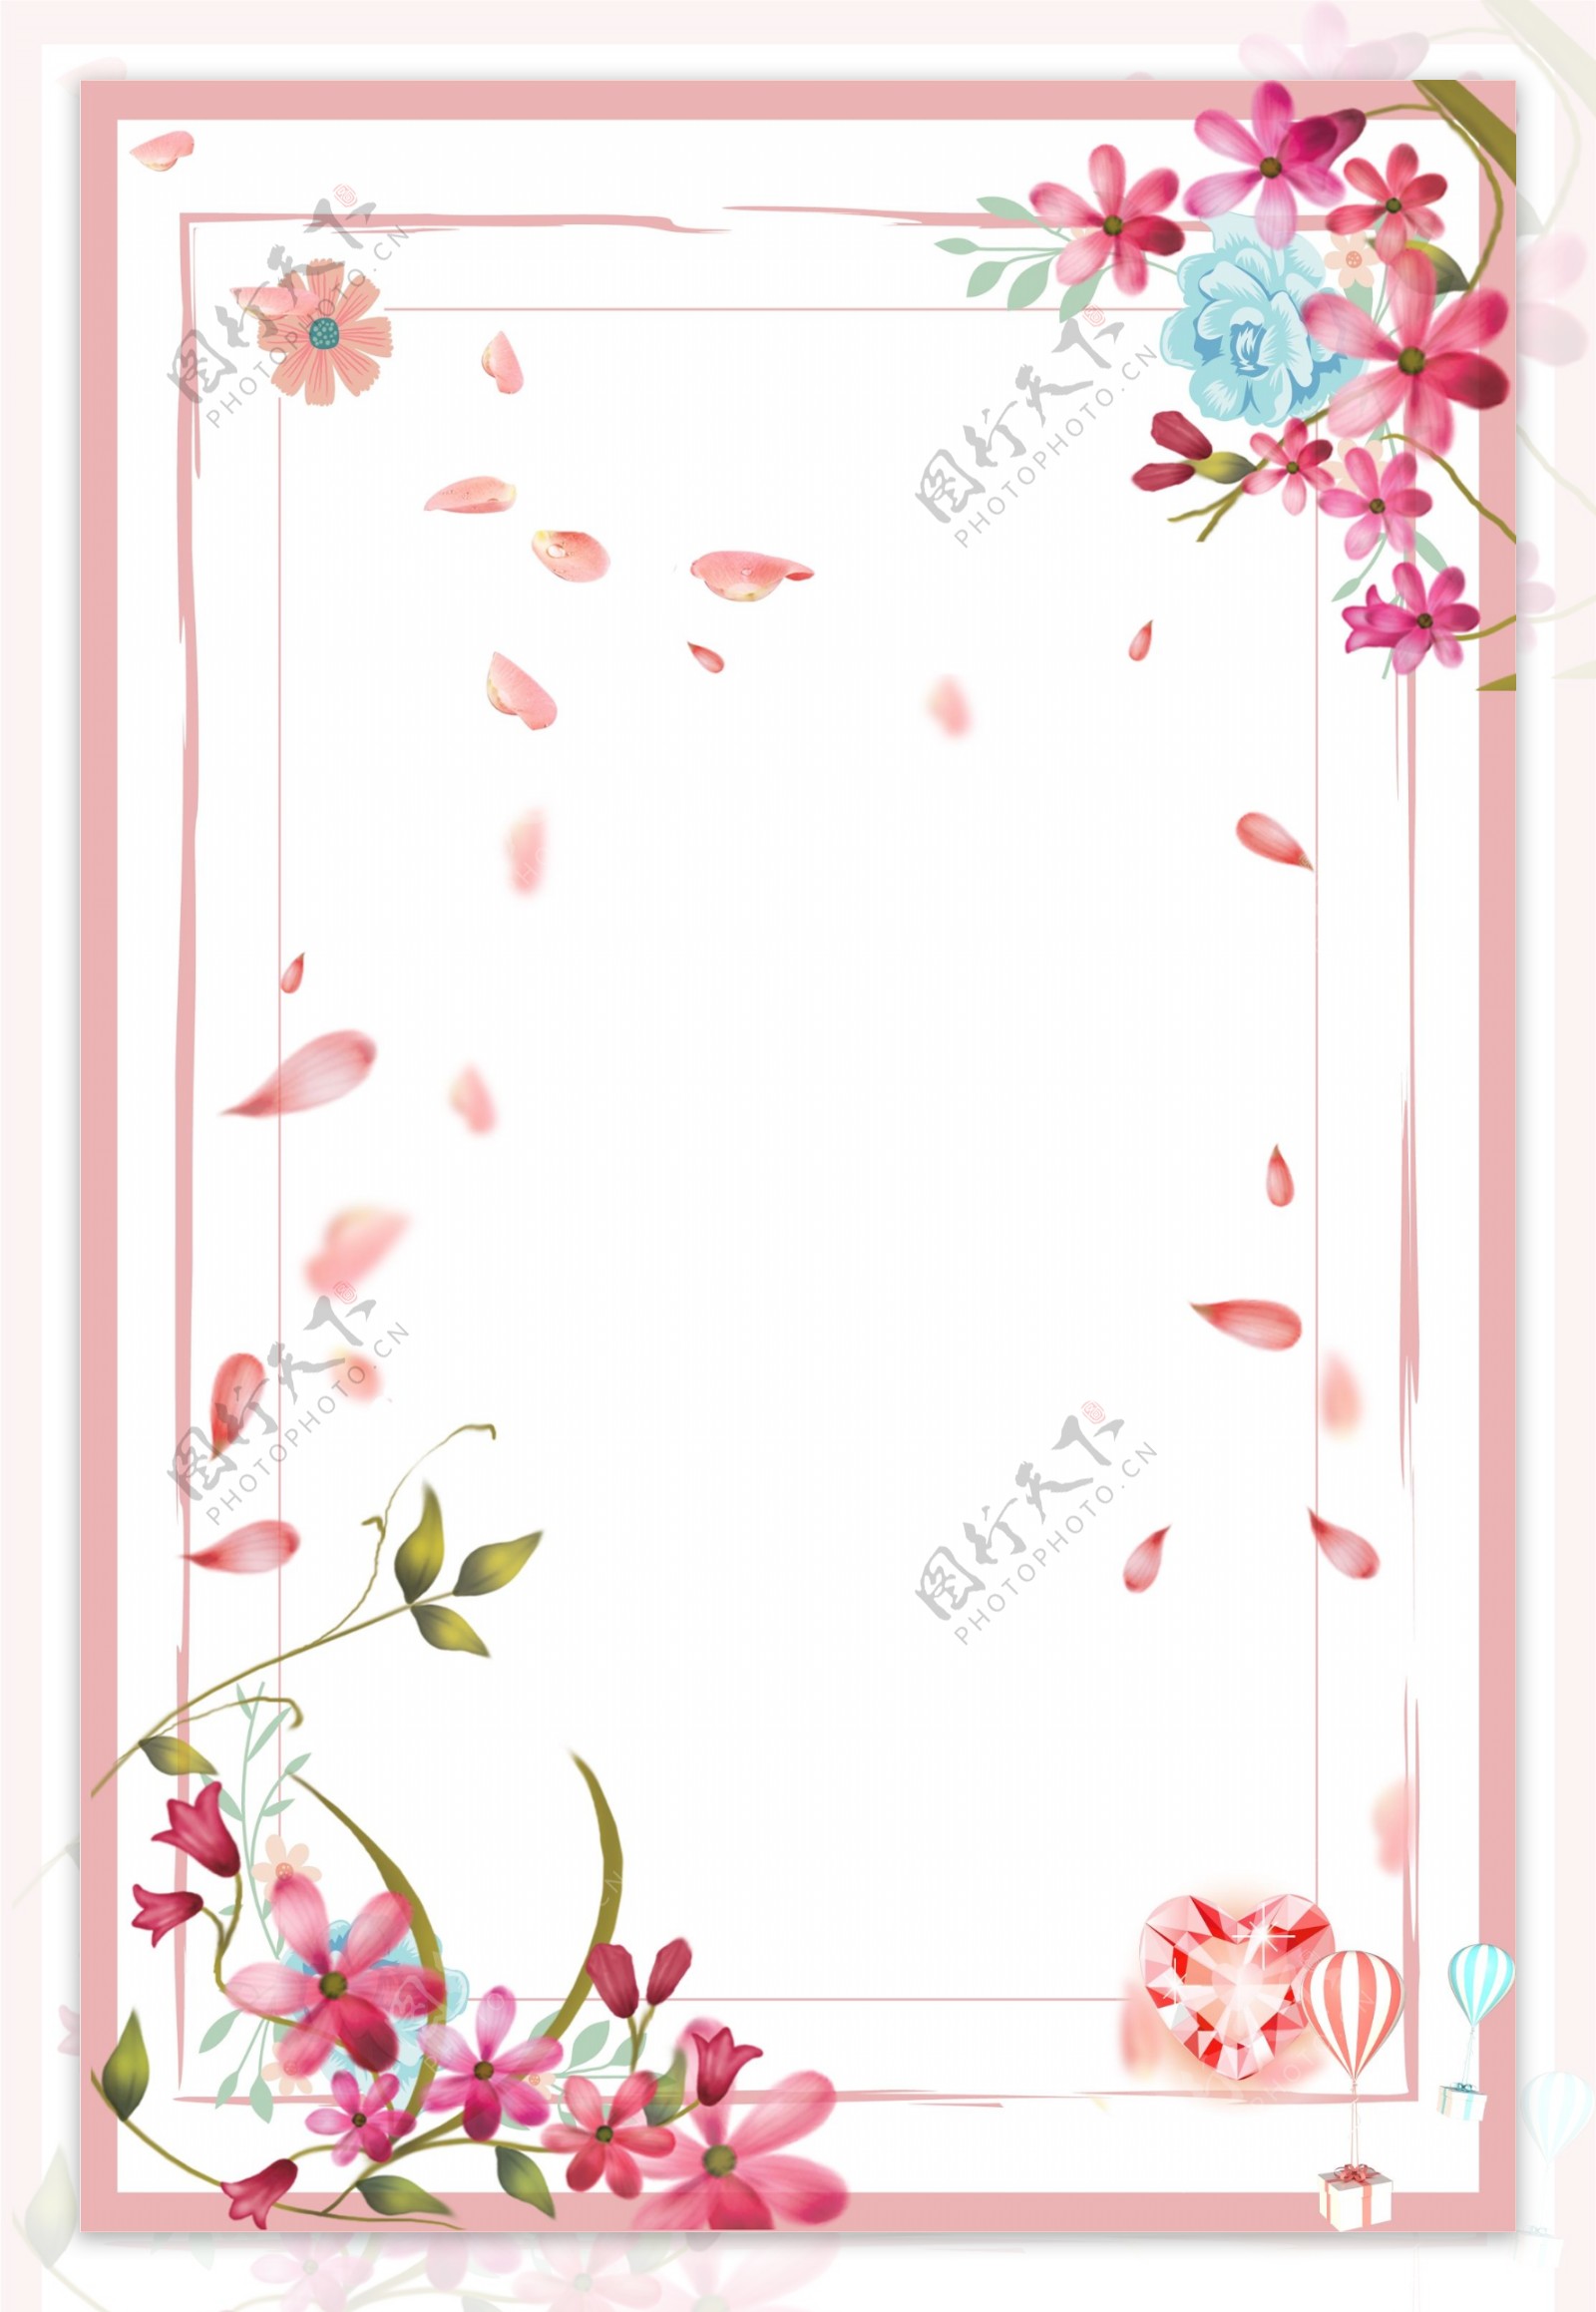 粉色花朵唯美生日海报背景素材